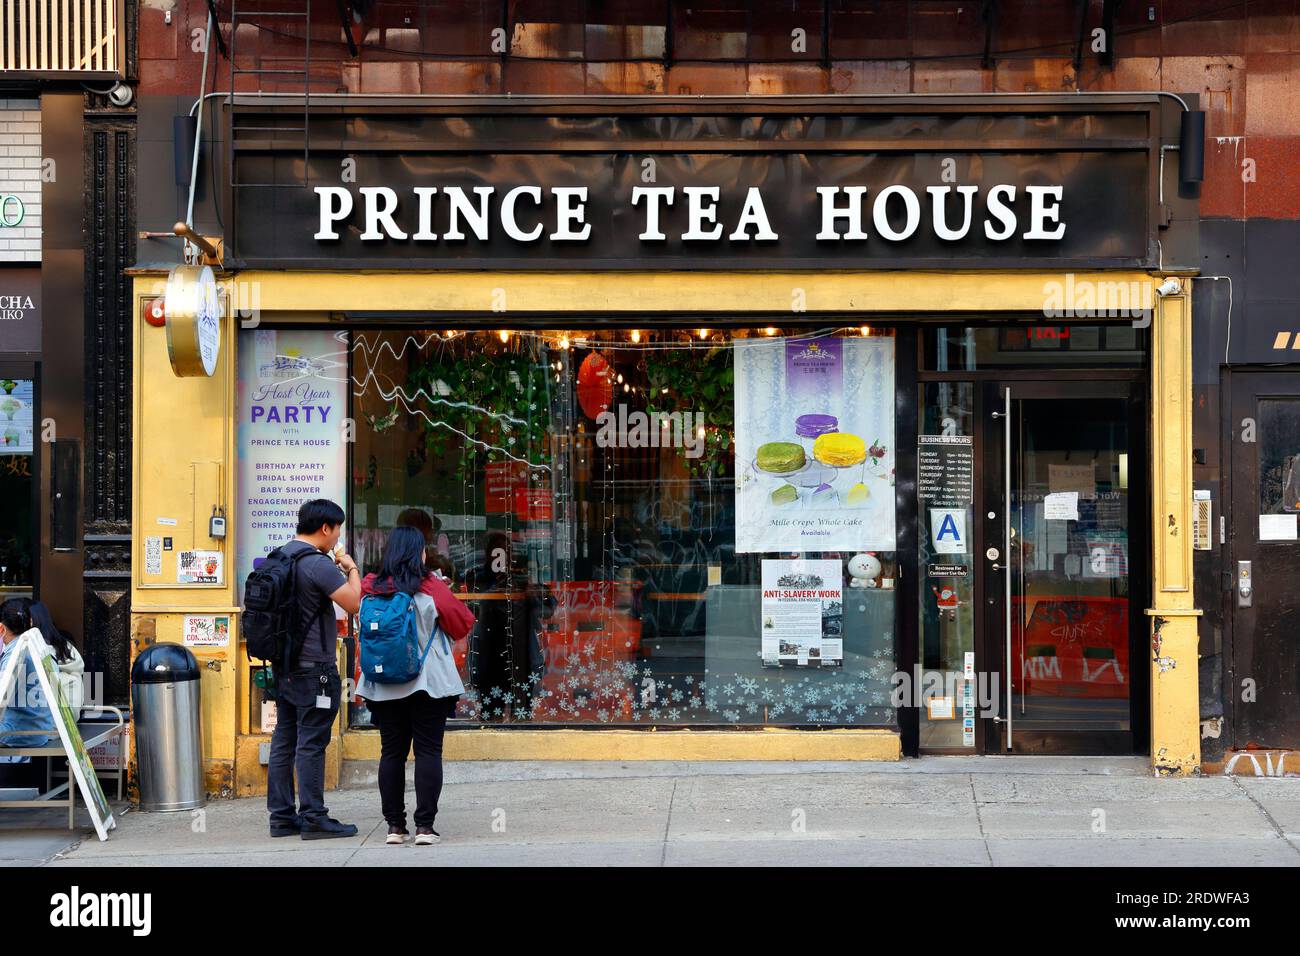 Prince Tea House, 134 Bowery, New York, NYC vitrine d'une chaîne de cafés de thé français d'Asie dans le quartier chinois de Manhattan. Banque D'Images